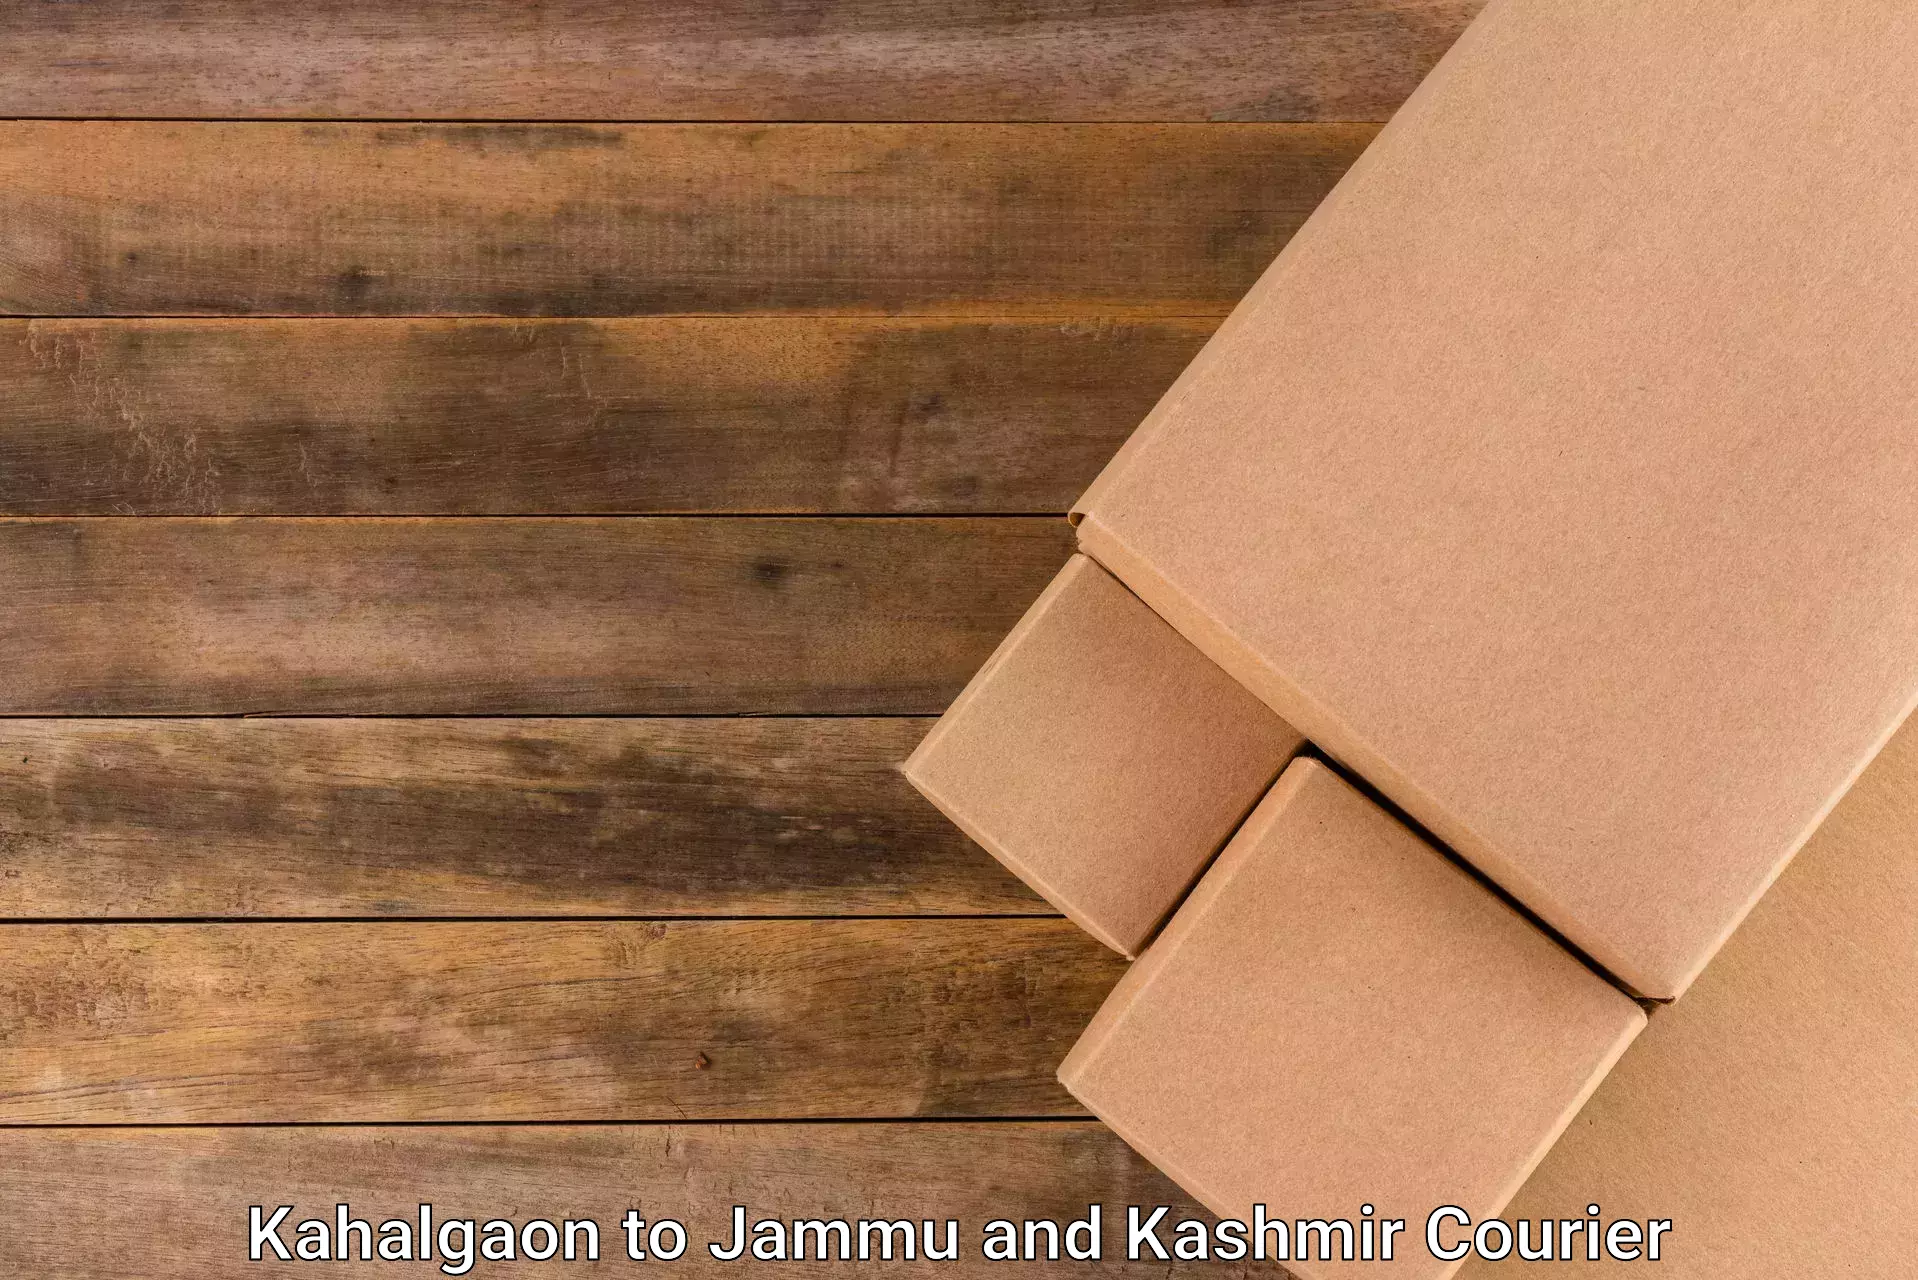 Parcel handling and care Kahalgaon to Srinagar Kashmir